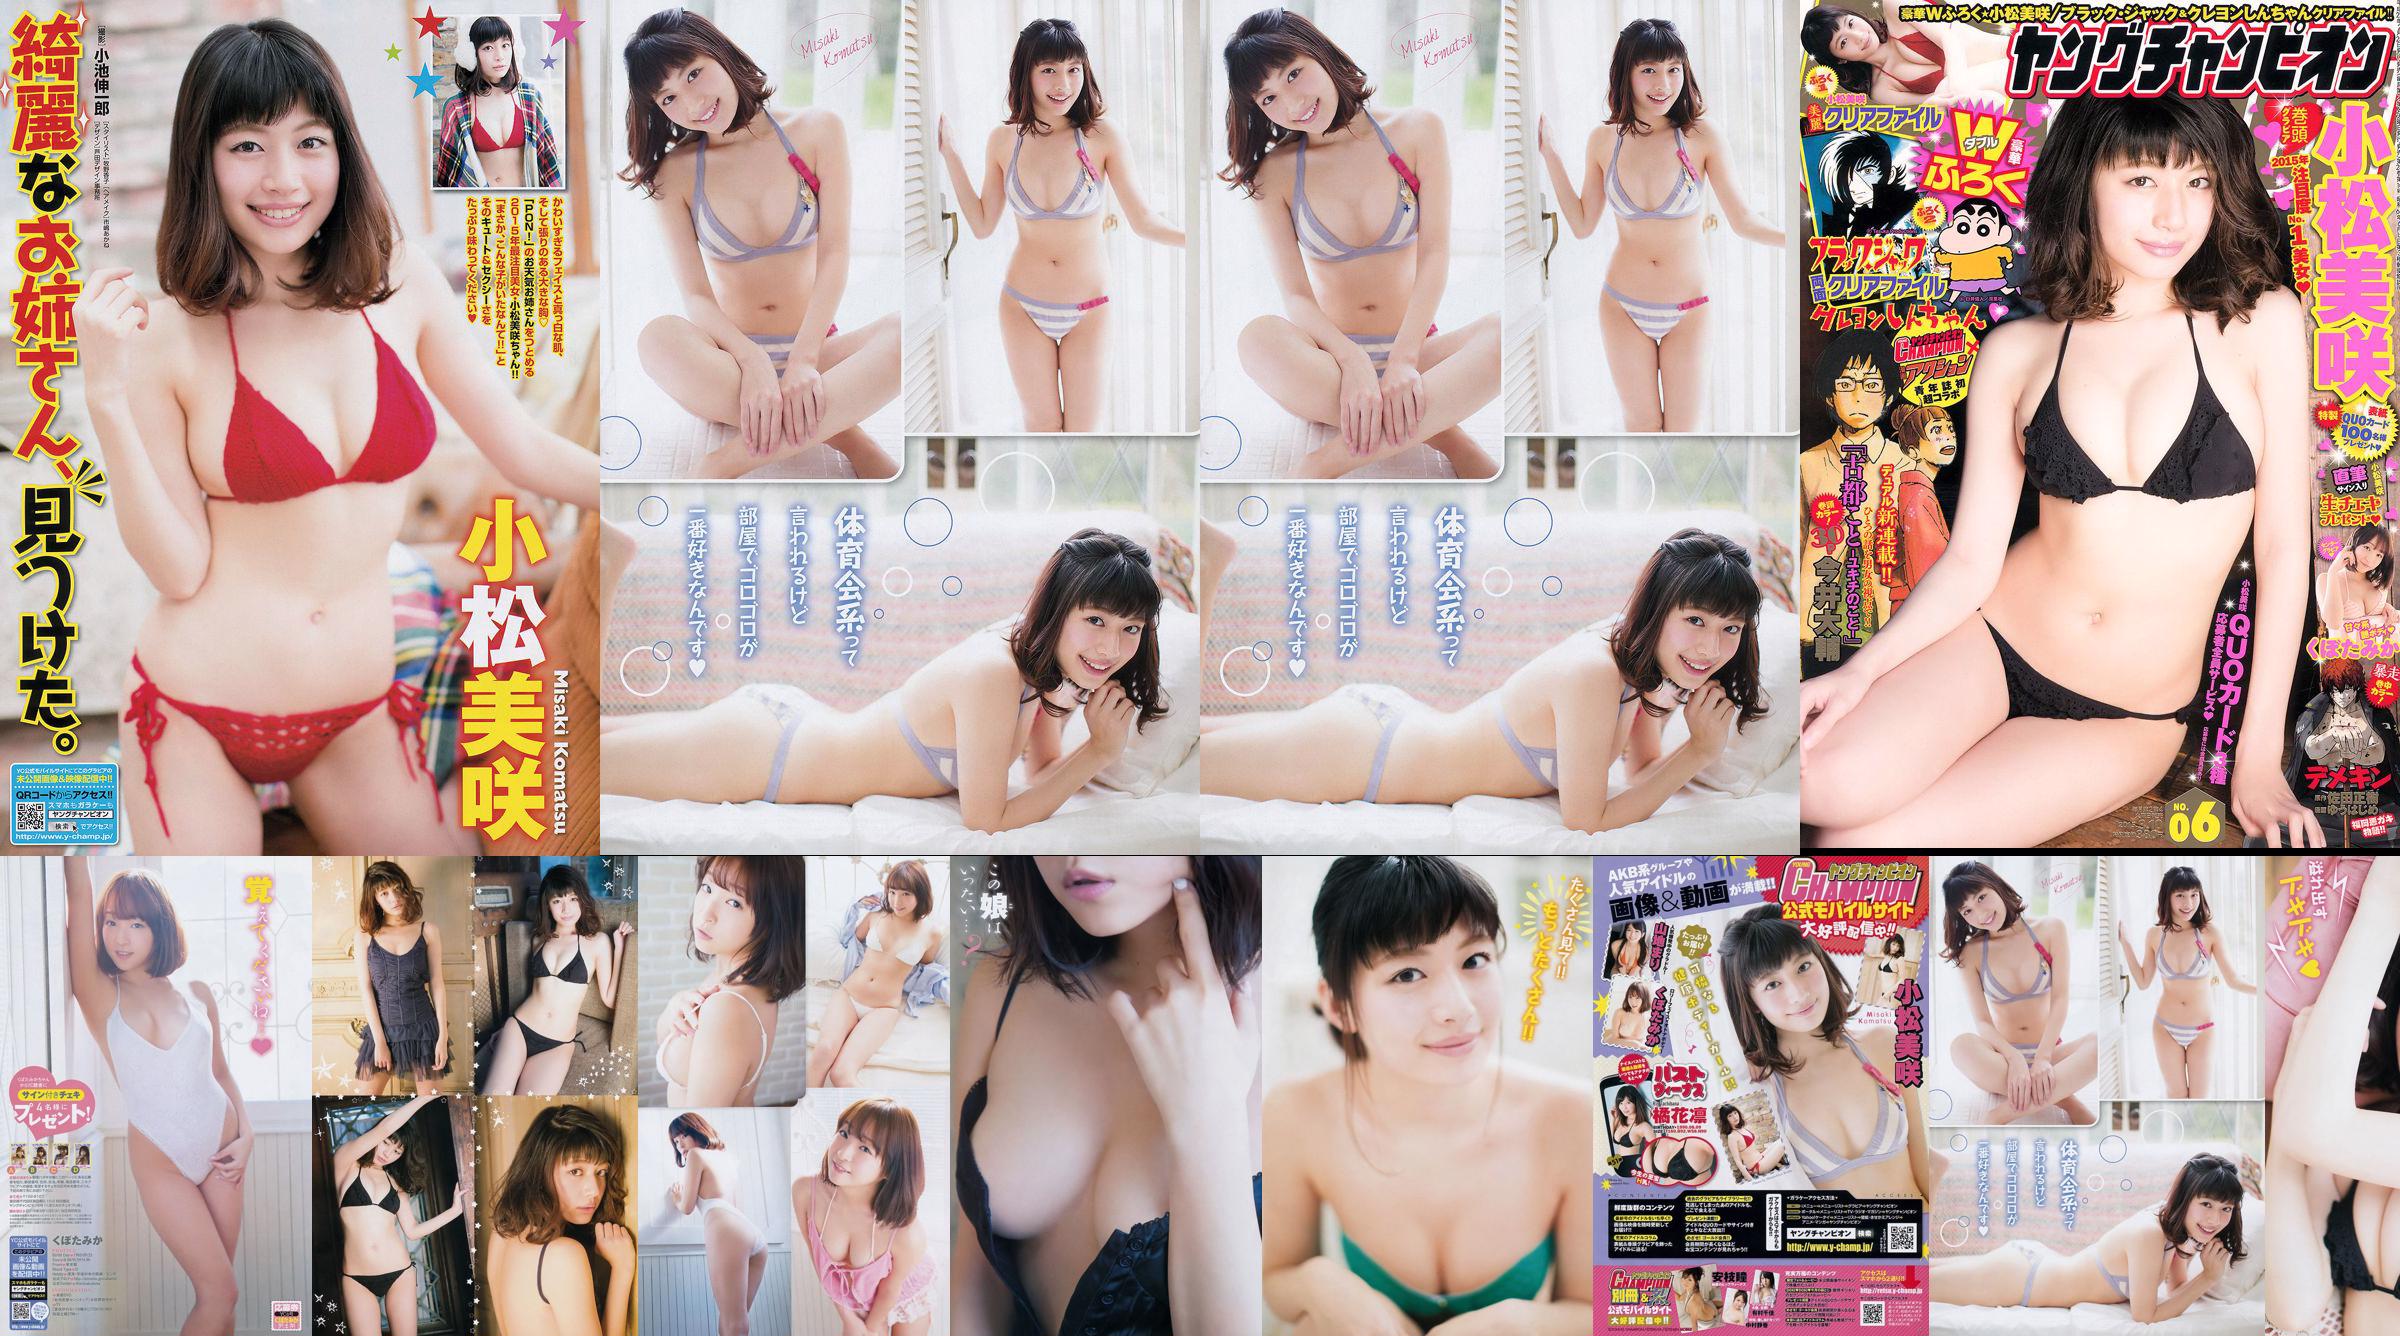 Hina Aizuki "Setiap! Cantik! Gadis !!" [Sabra.net] Strictly Girl No.6a60d3 Halaman 1